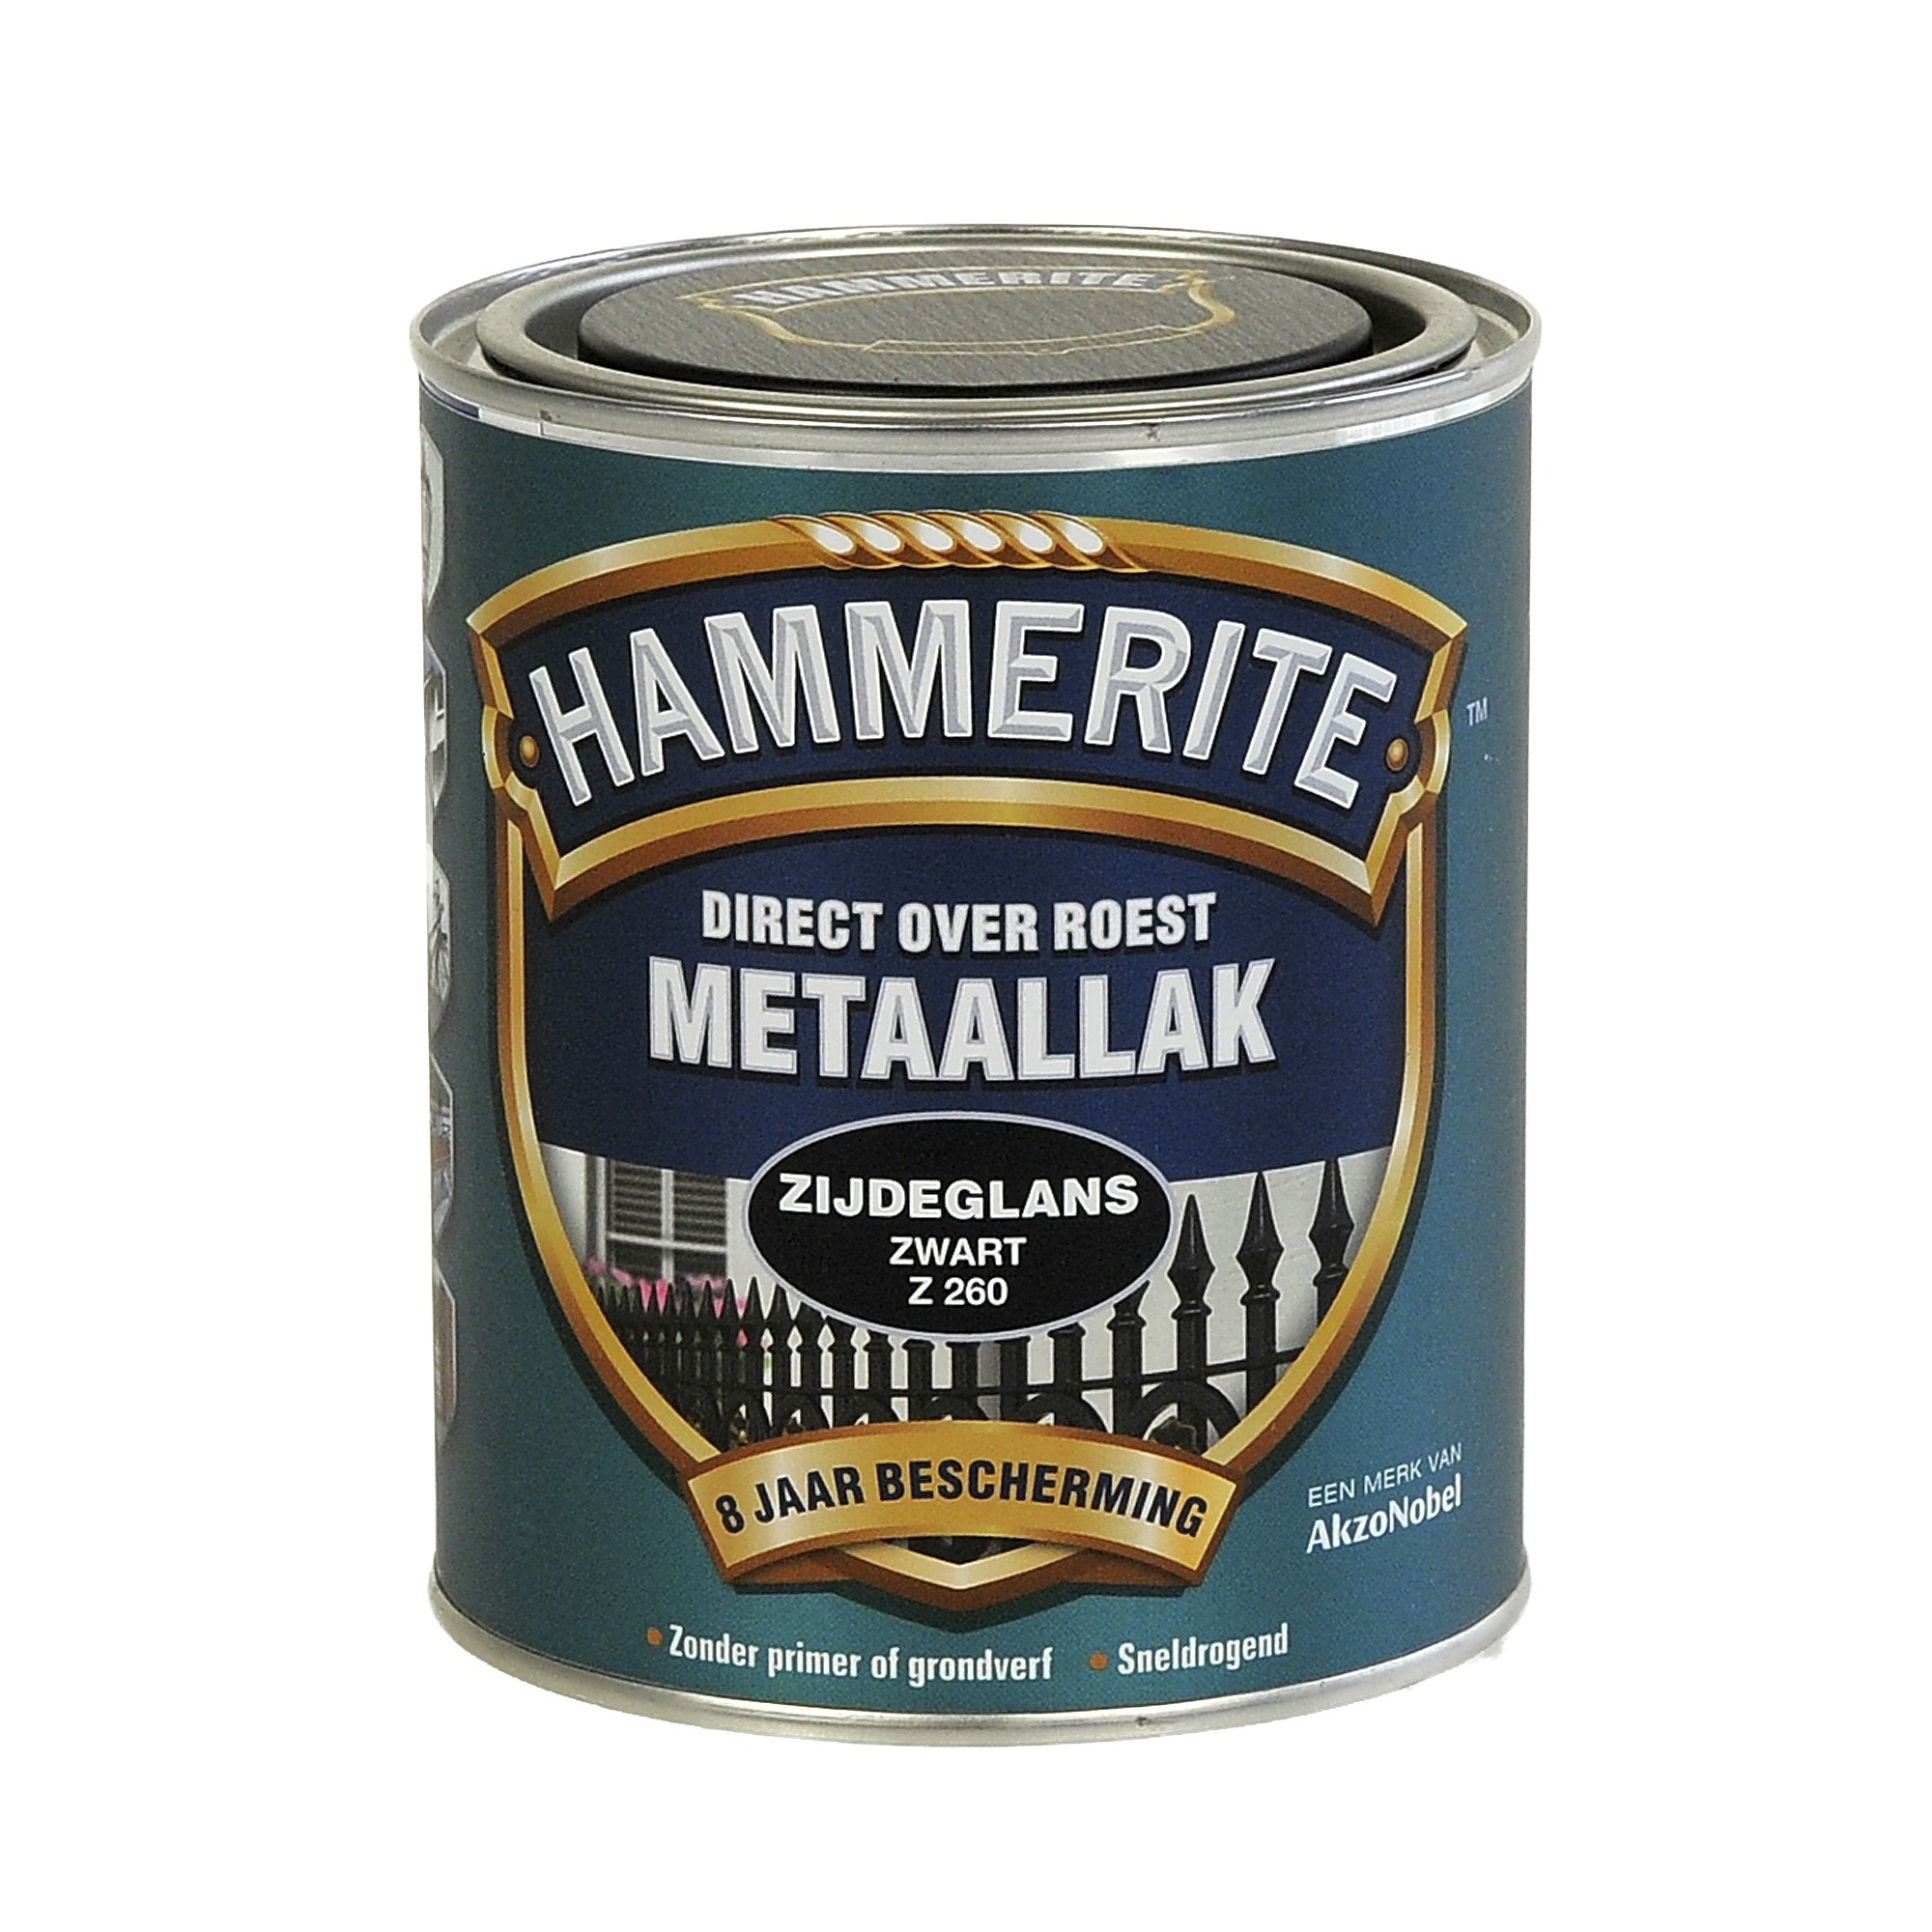 Hammerite direct over roest metaallak zijdeglans zwart - 750 ml